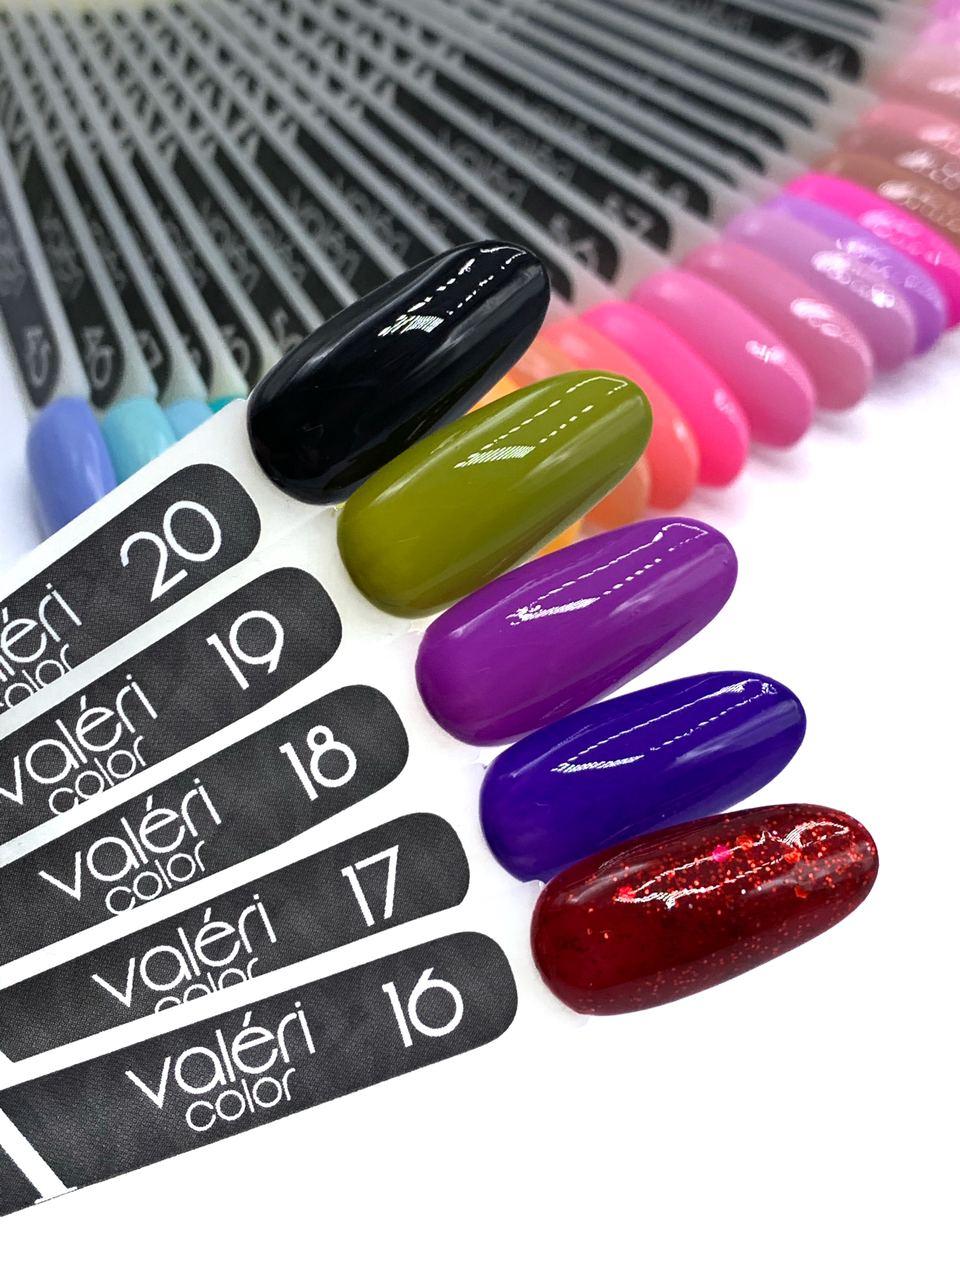 Гель лак для нігтів Valeri Color №018 (бузковий) 6 мл